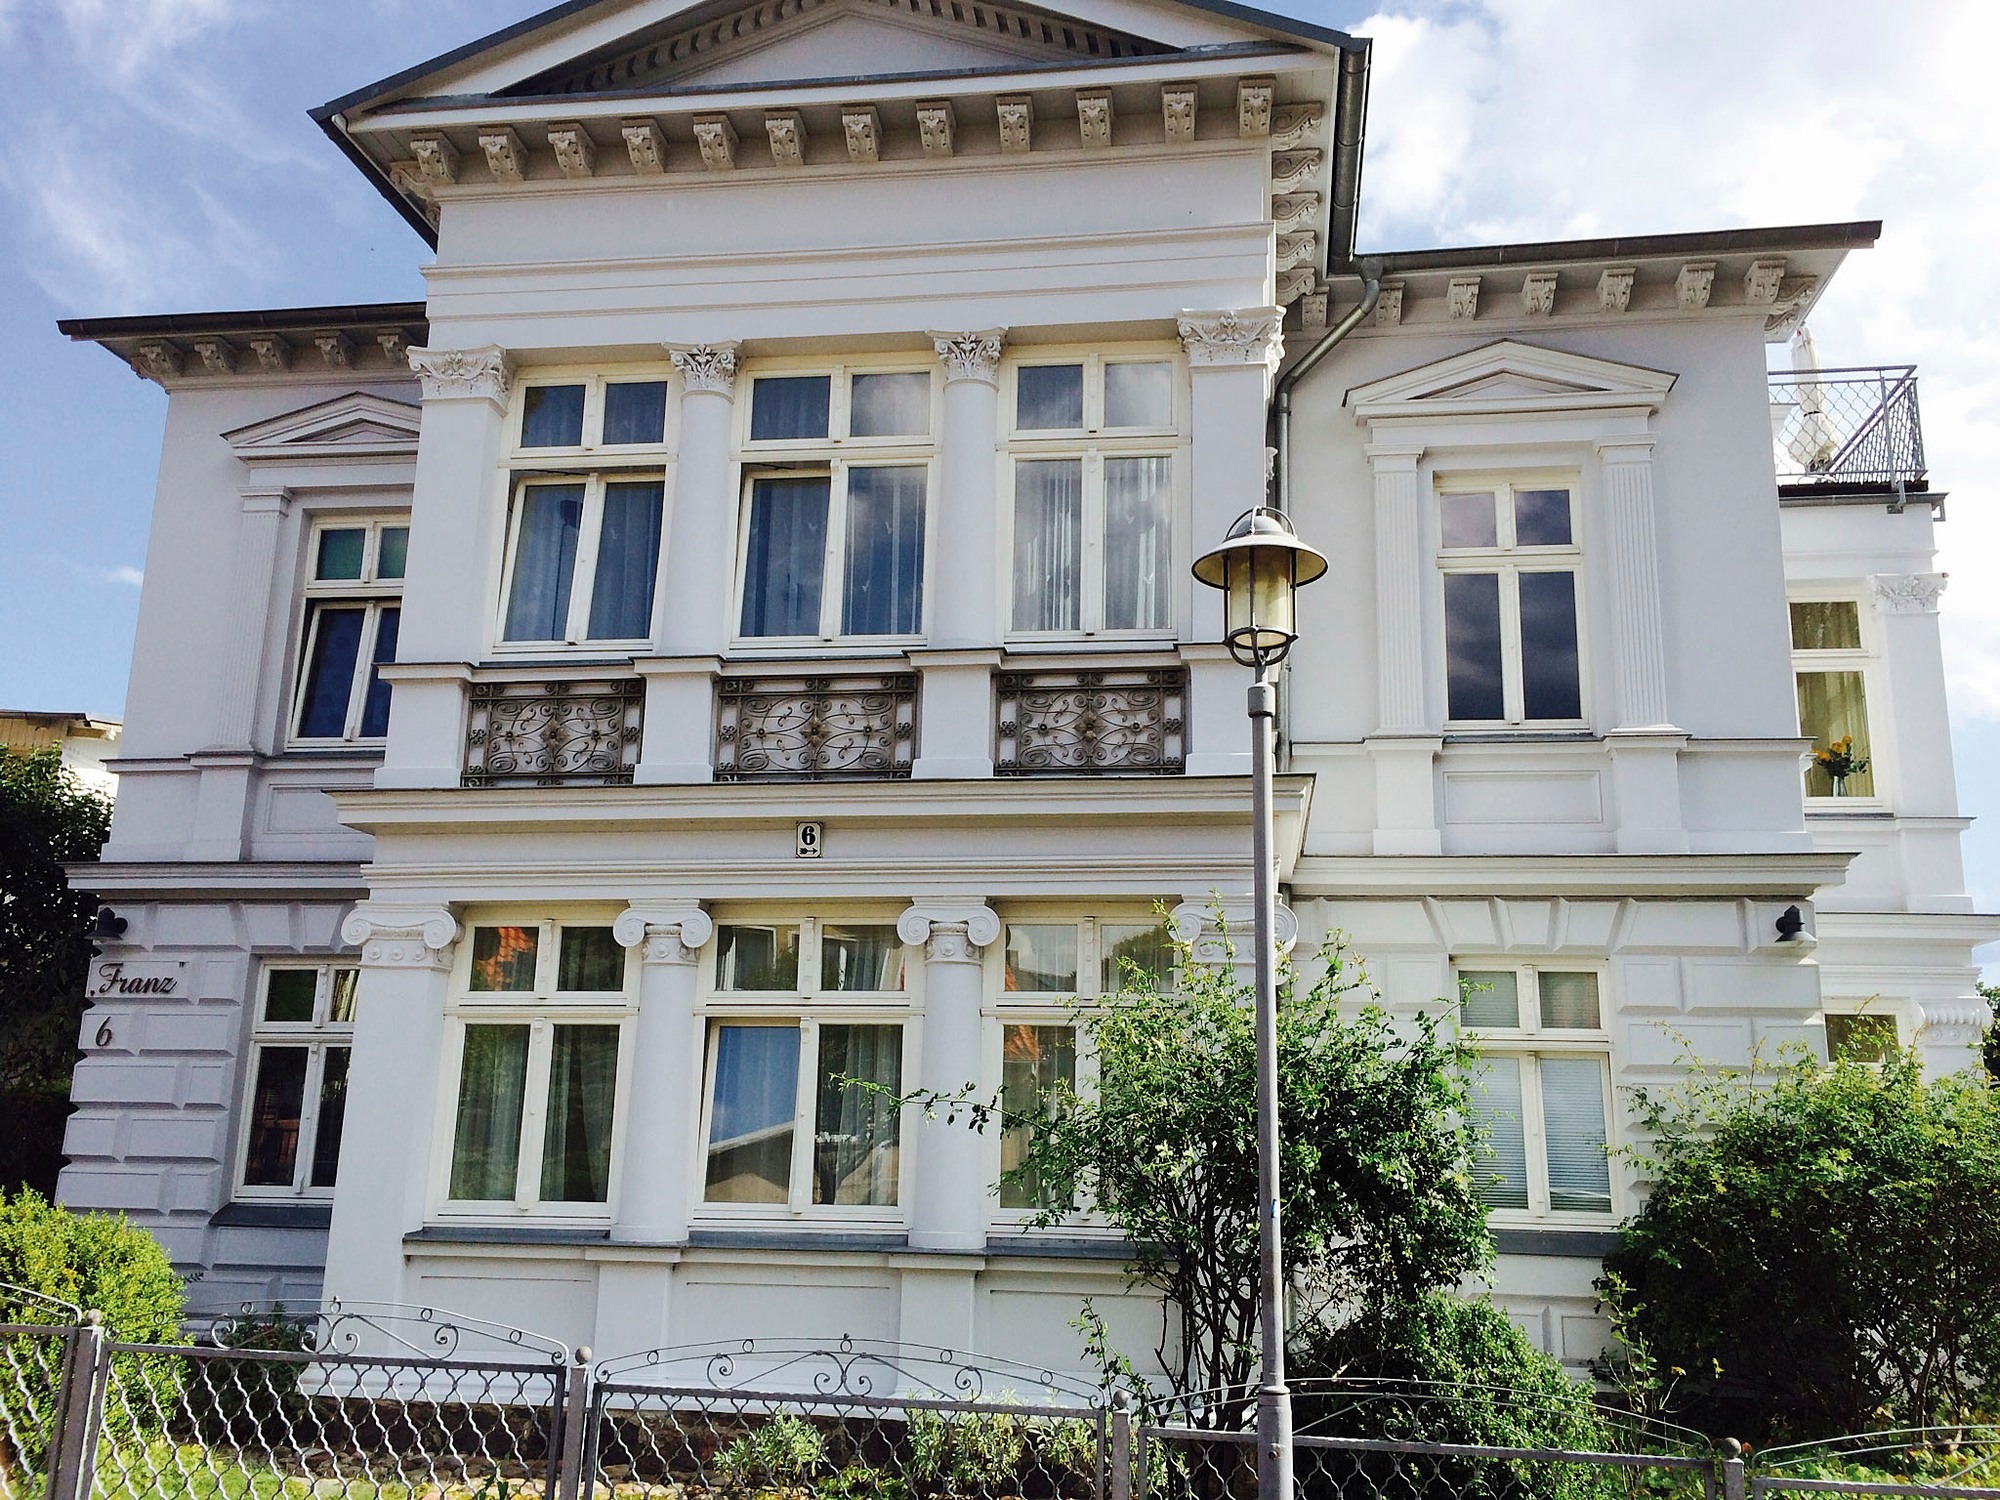 Villa Franz - Seestern Ferienwohnung in Mecklenburg Vorpommern